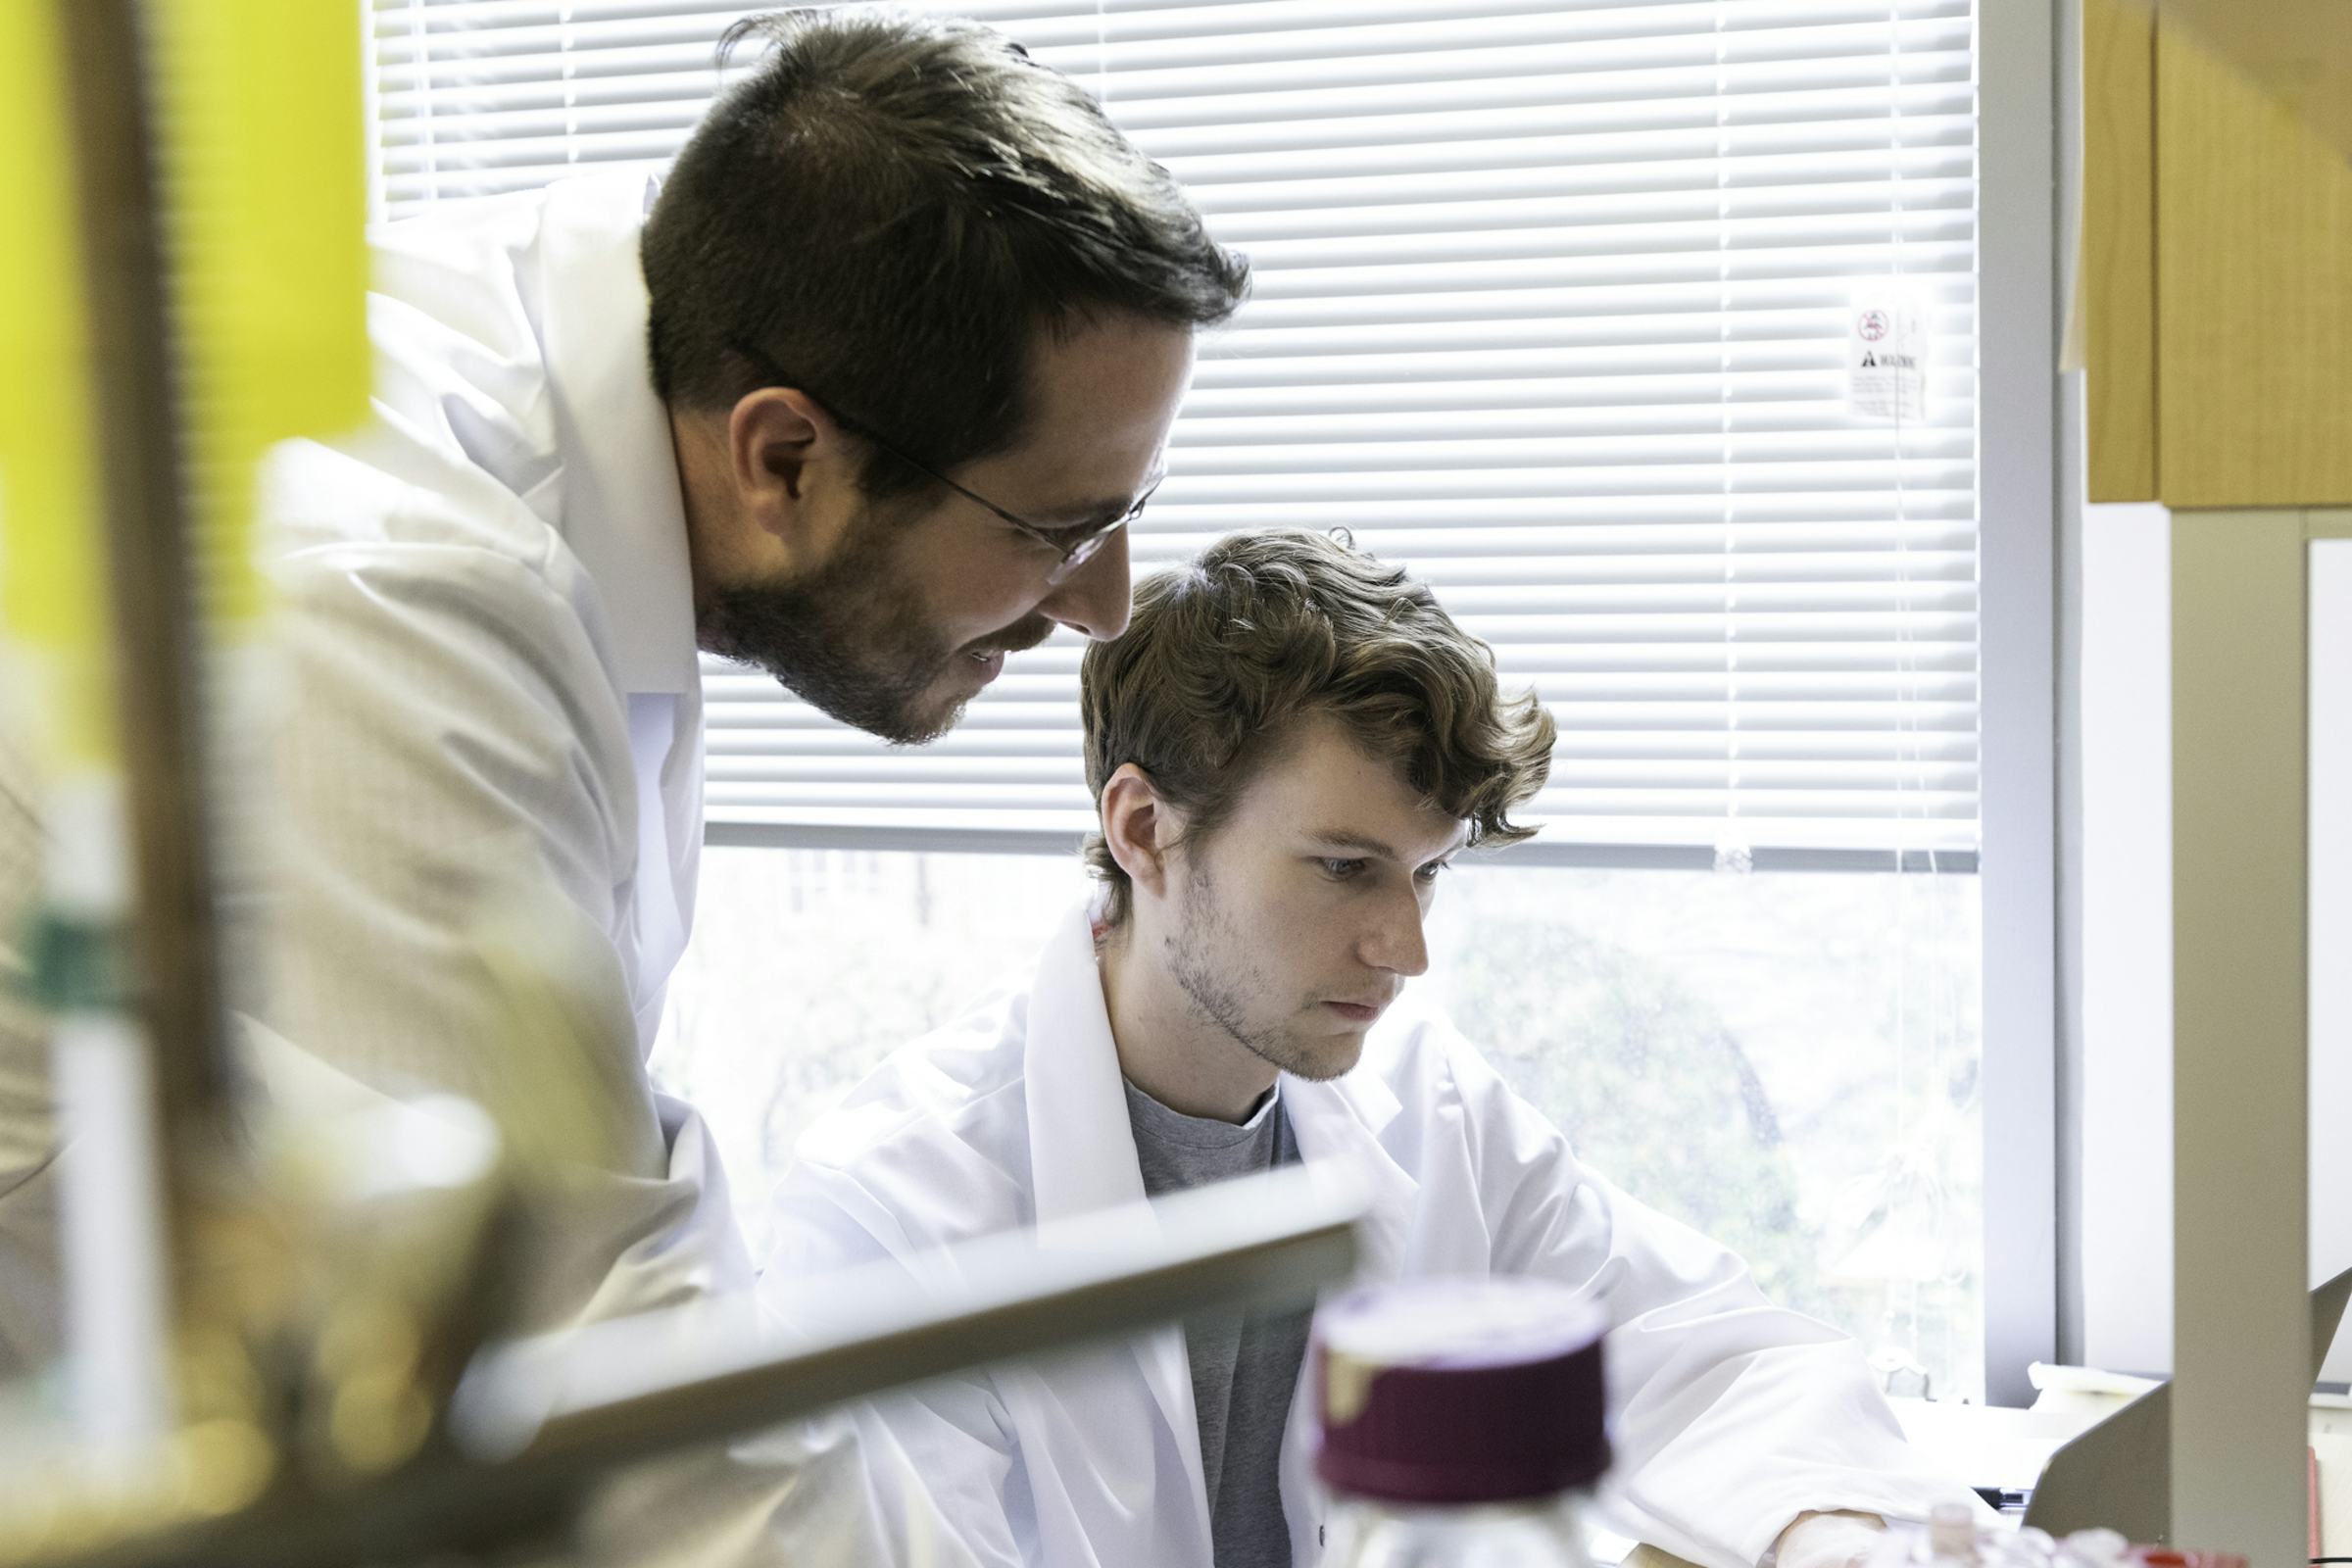 Jason McLellan peers at lab work underway by grad student Daniel Wrapp